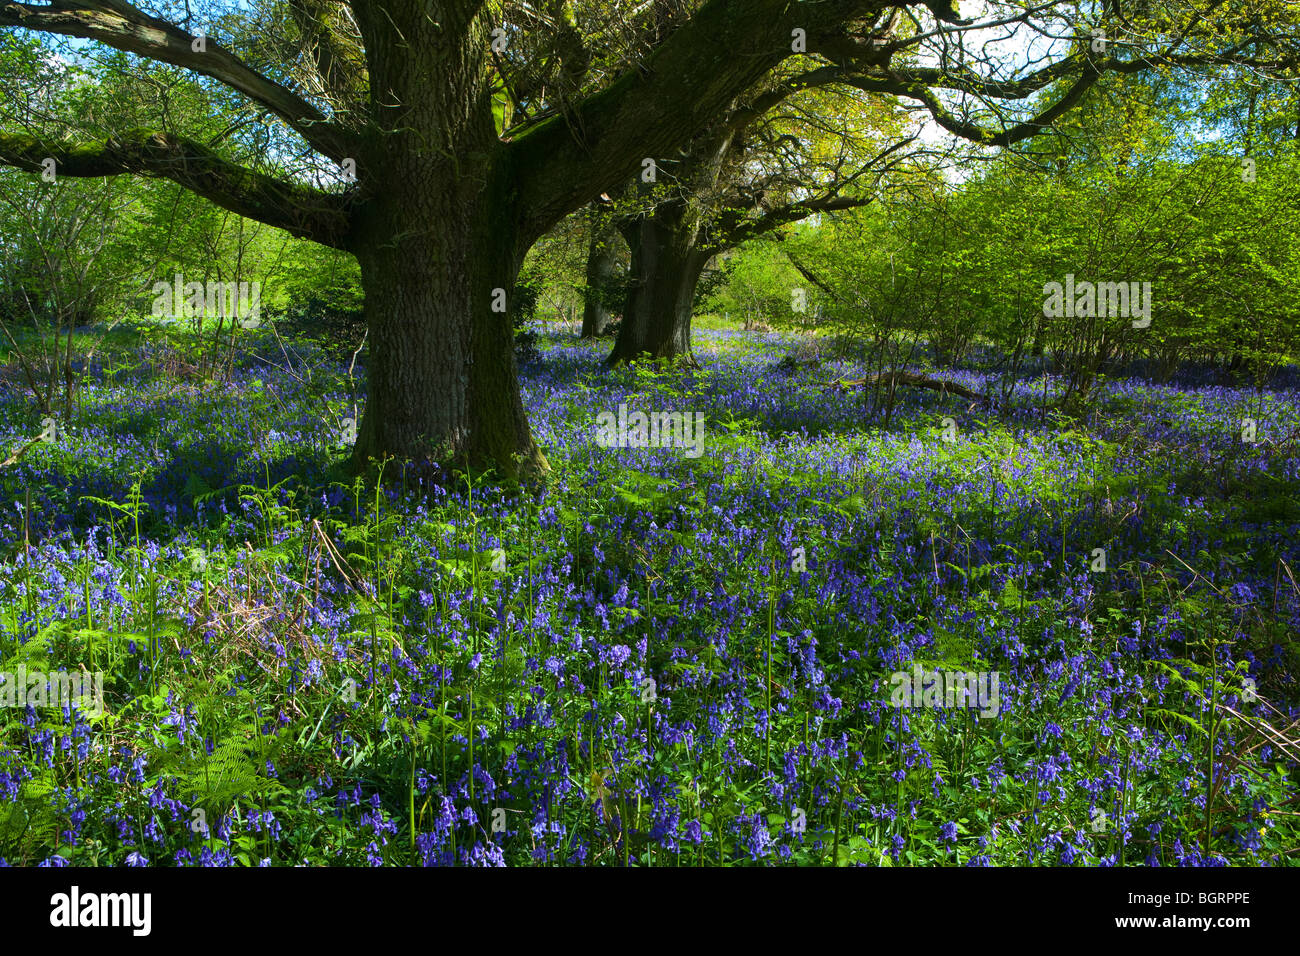 Un tappeto di Bluebells nei dintorni di coppia alberi di quercia inondata di sole Foto Stock